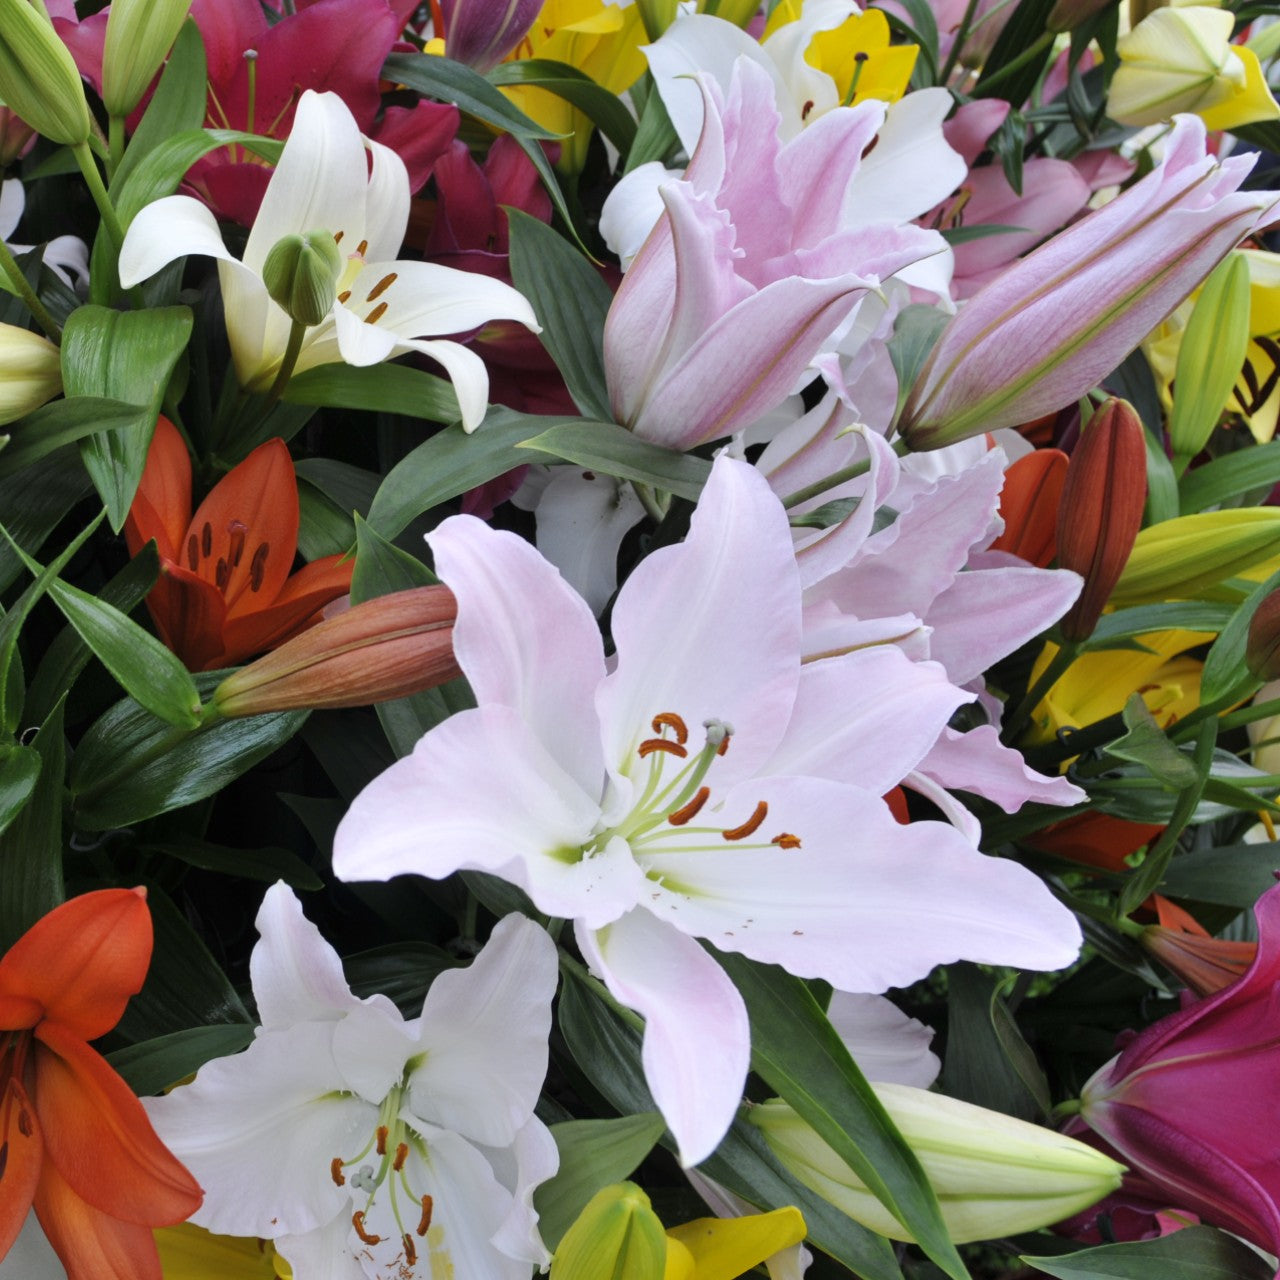 Versatile wholesale flower bouquet boxes Items 